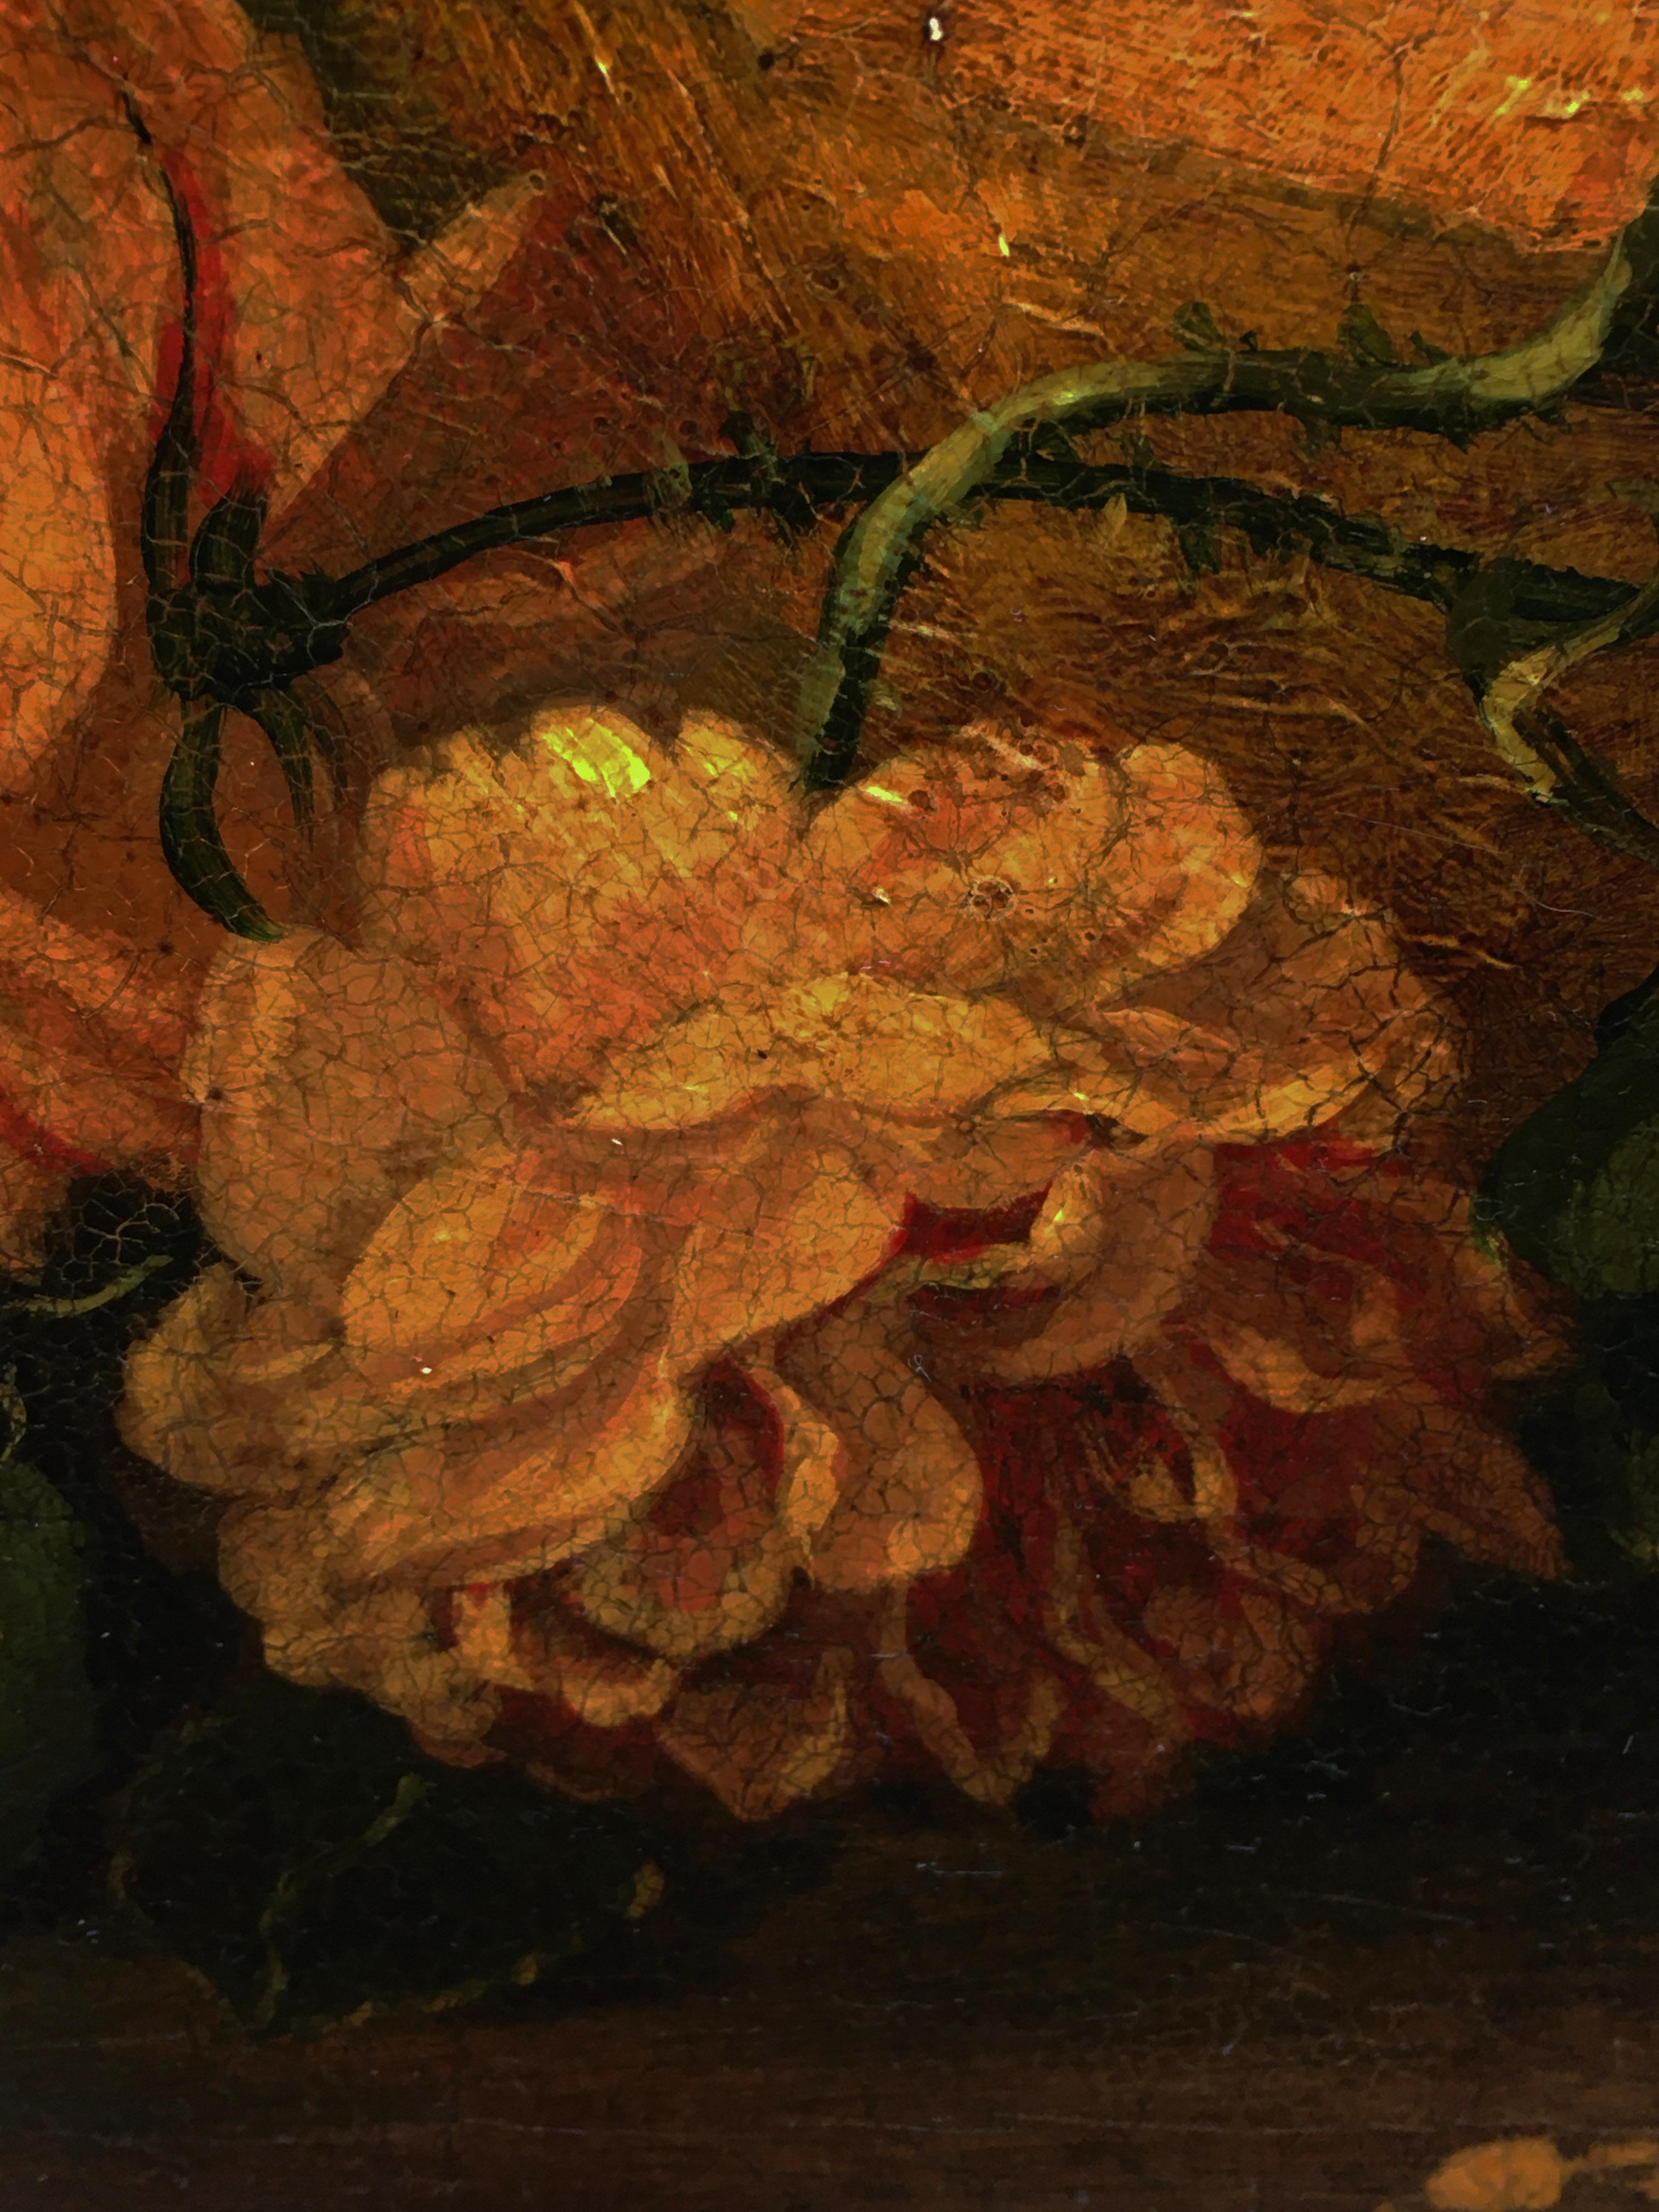 Chérubin avec des fleurs - Huile sur toile cm.80x100 par Giulio Di Sotto, Italie, 2002.
Doré à la feuille d'or  cadre en bois disponible sur demande
Cette magnifique huile sur toile représente deux putti jouant sur un fond de fleurs et de fruits.
Le